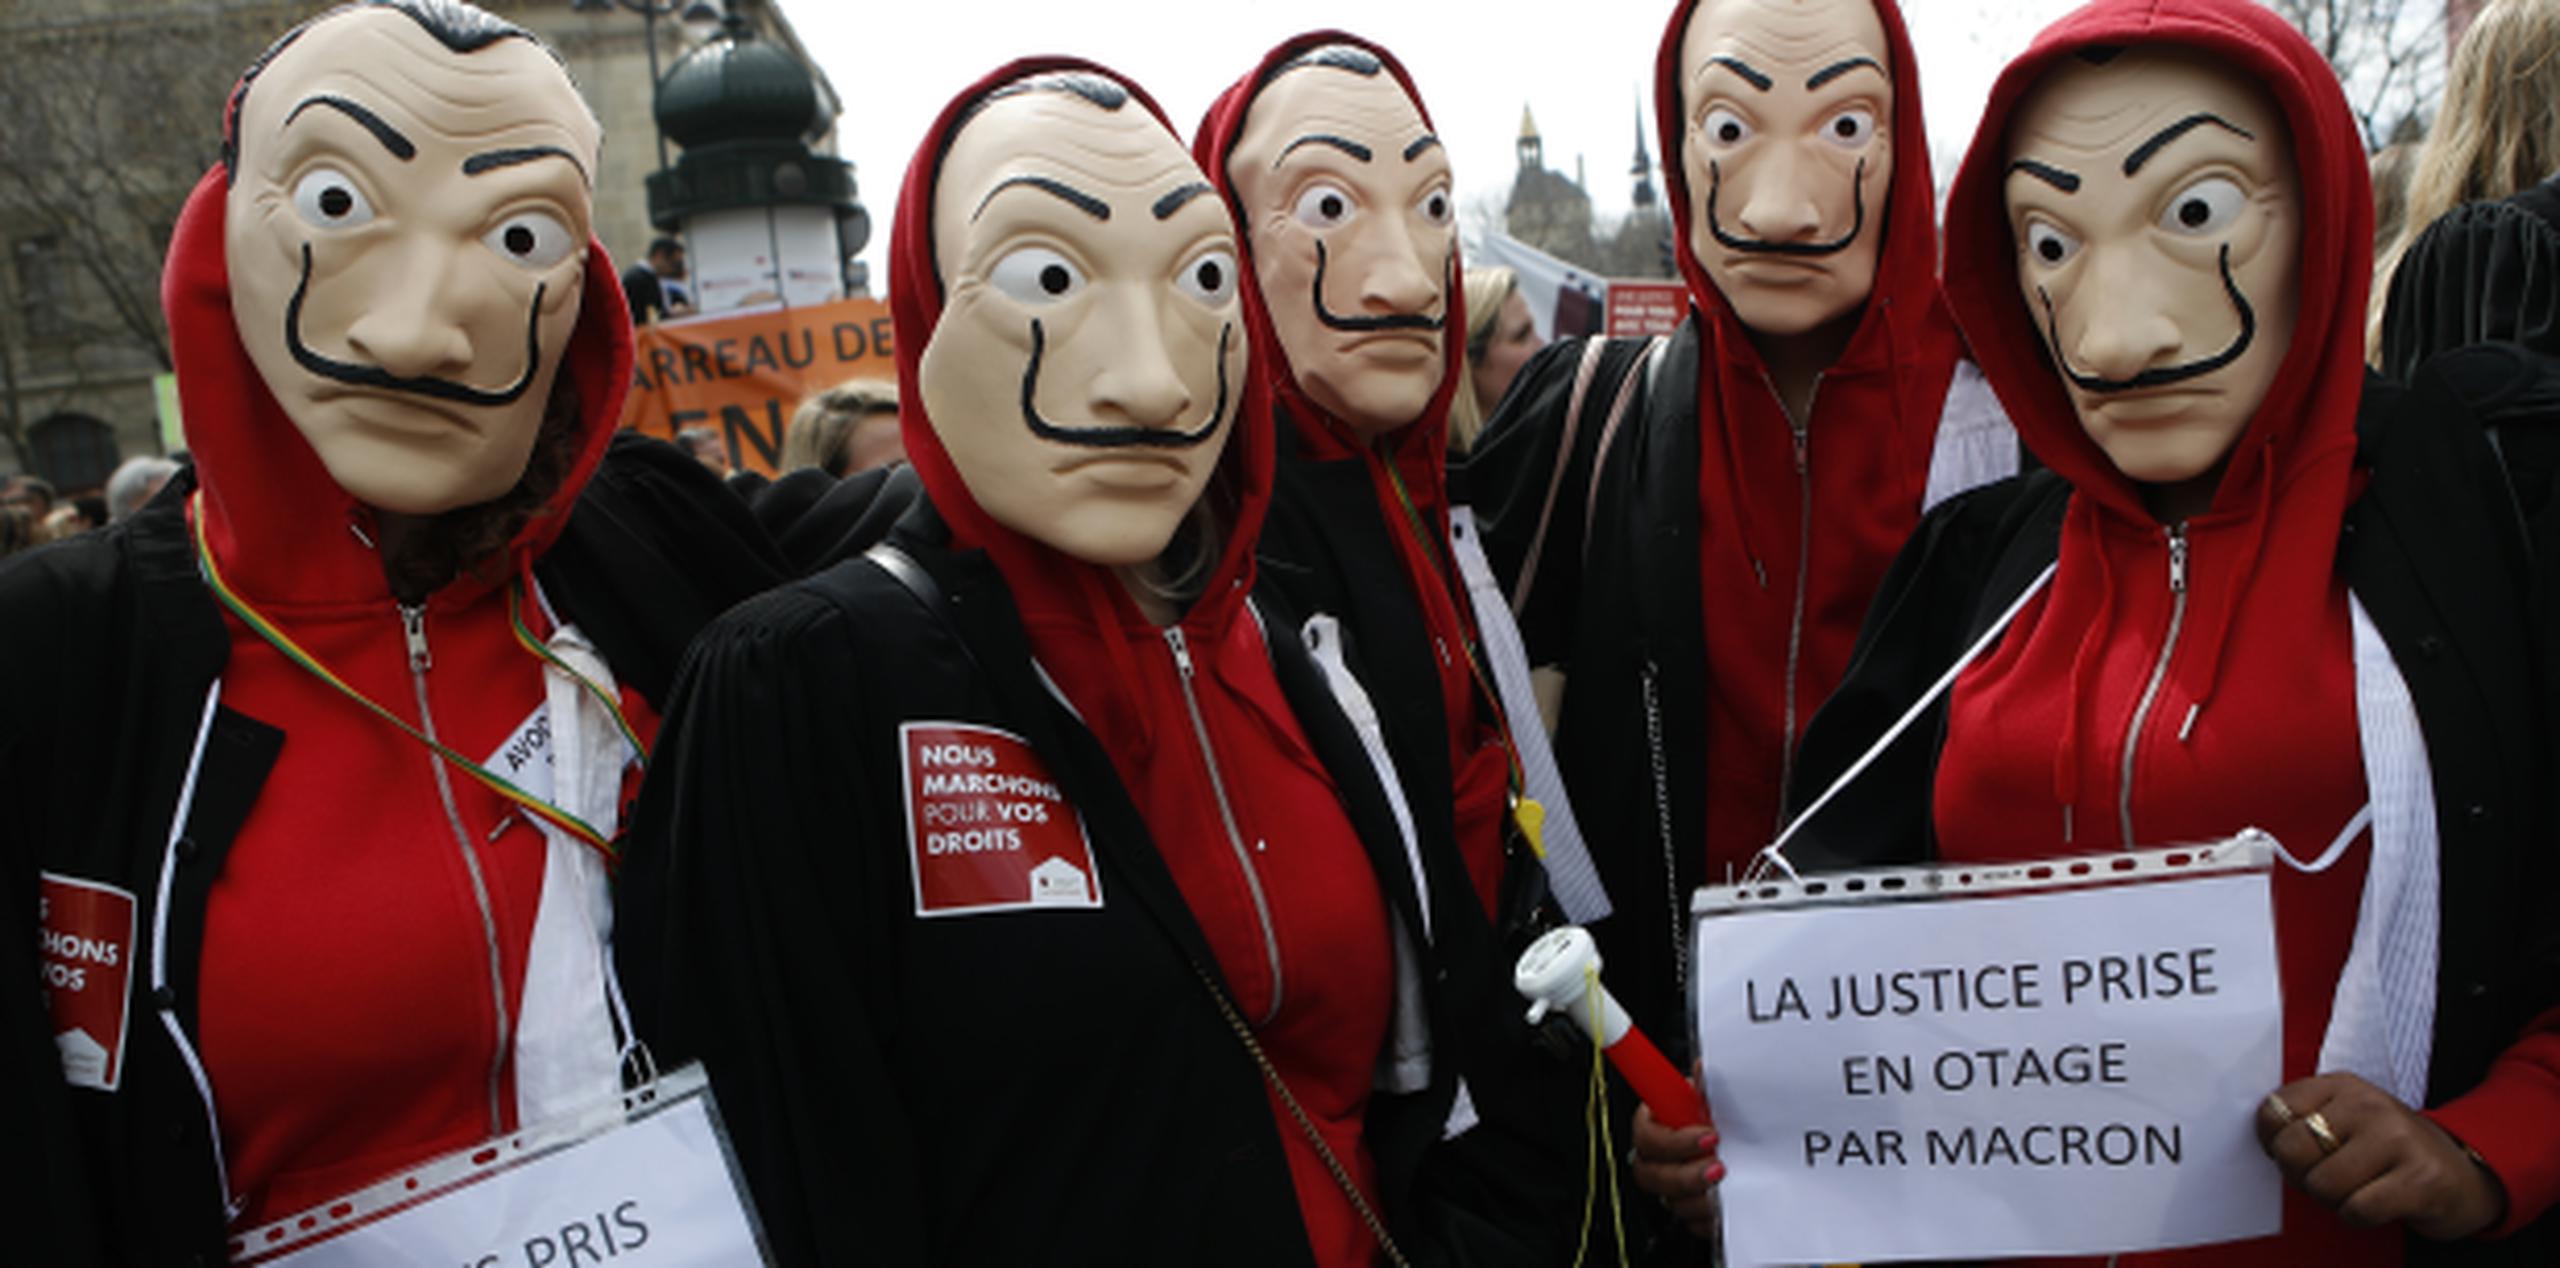 En medio de la protesta por cambios en el sistema legal de Francia, algunos abogados y magistrados se manifestaron disfrazados como personales de la serie "La Casa de Papel". (AP)